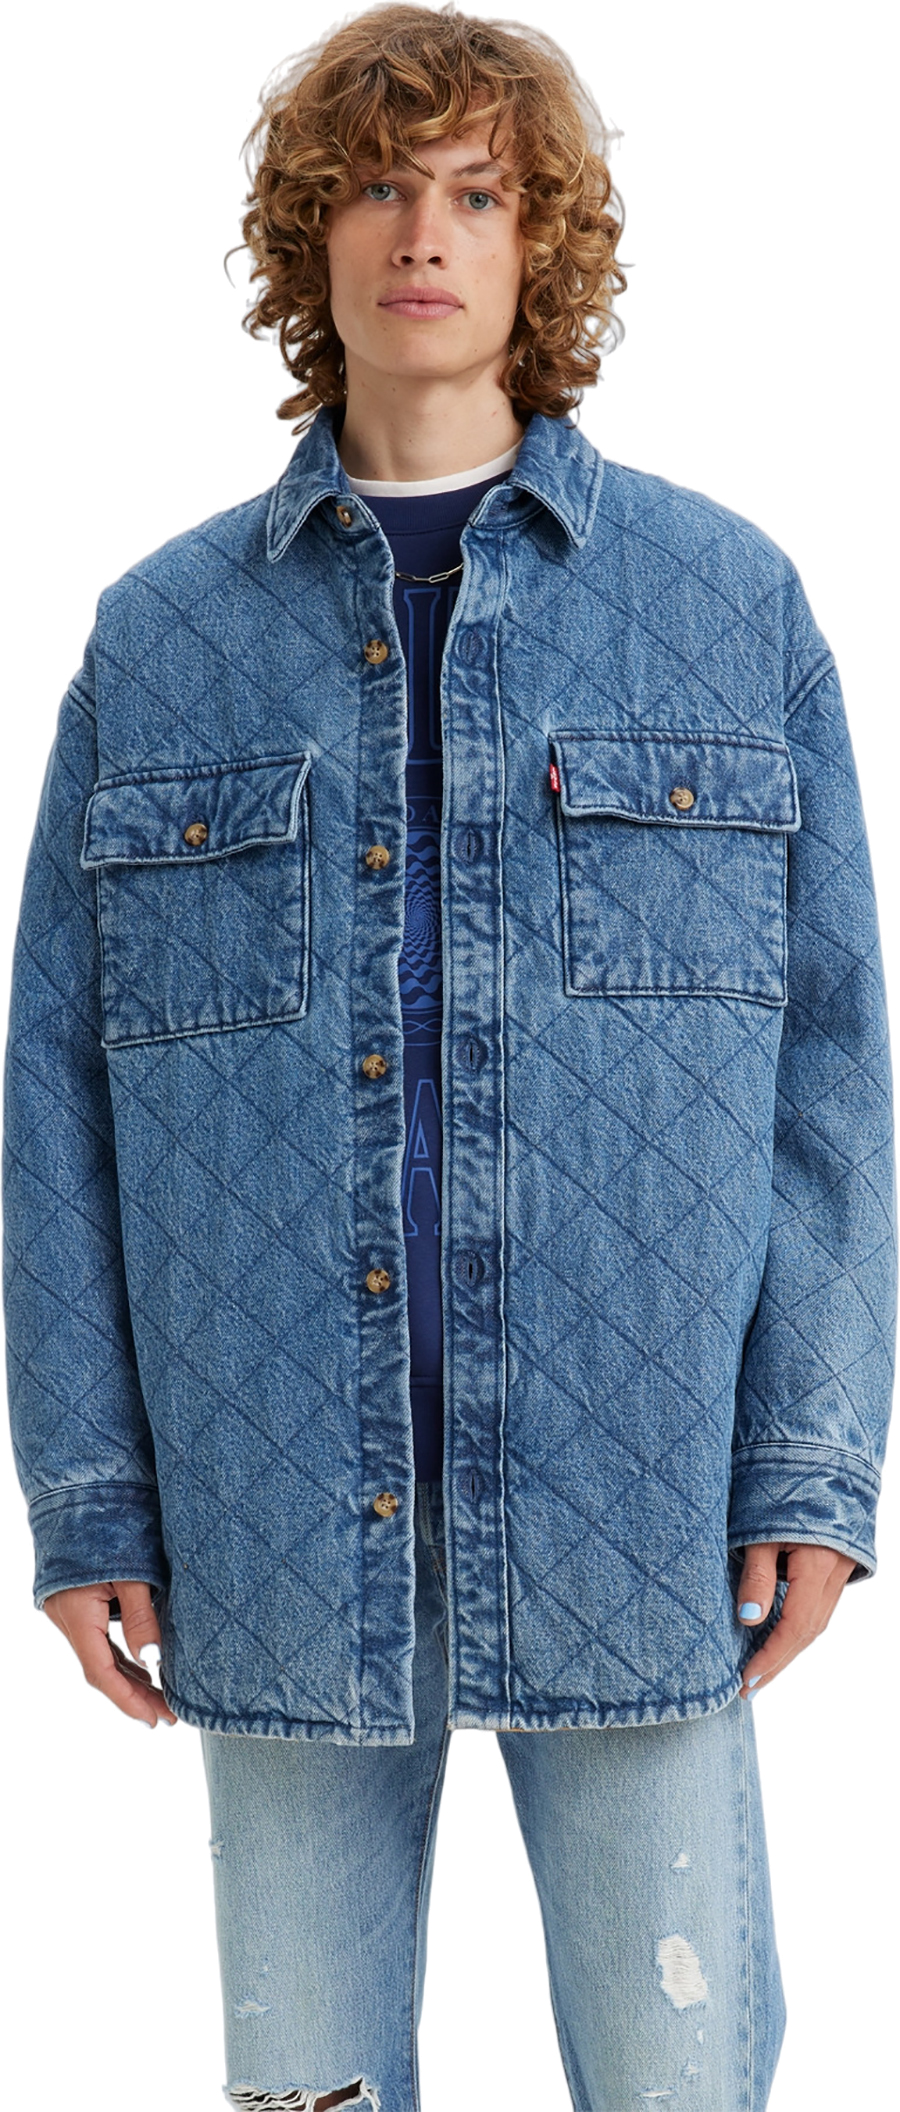 Джинсовая куртка мужская Levis A0682 синяя XL